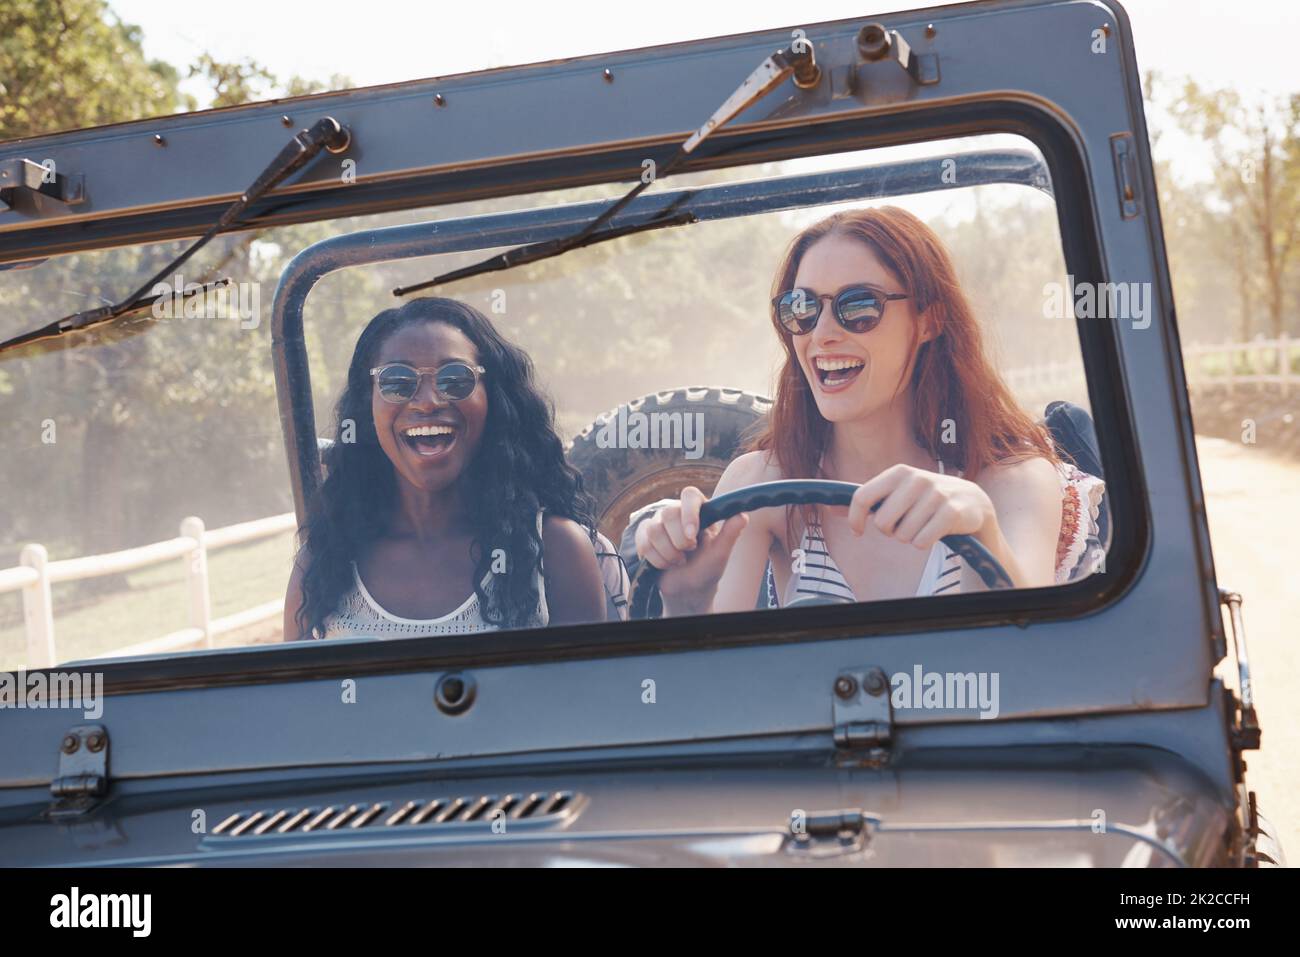 Le plaisir est notre essence. Photo courte de deux femmes en train de rire en train de rouler sur une route de terre. Banque D'Images